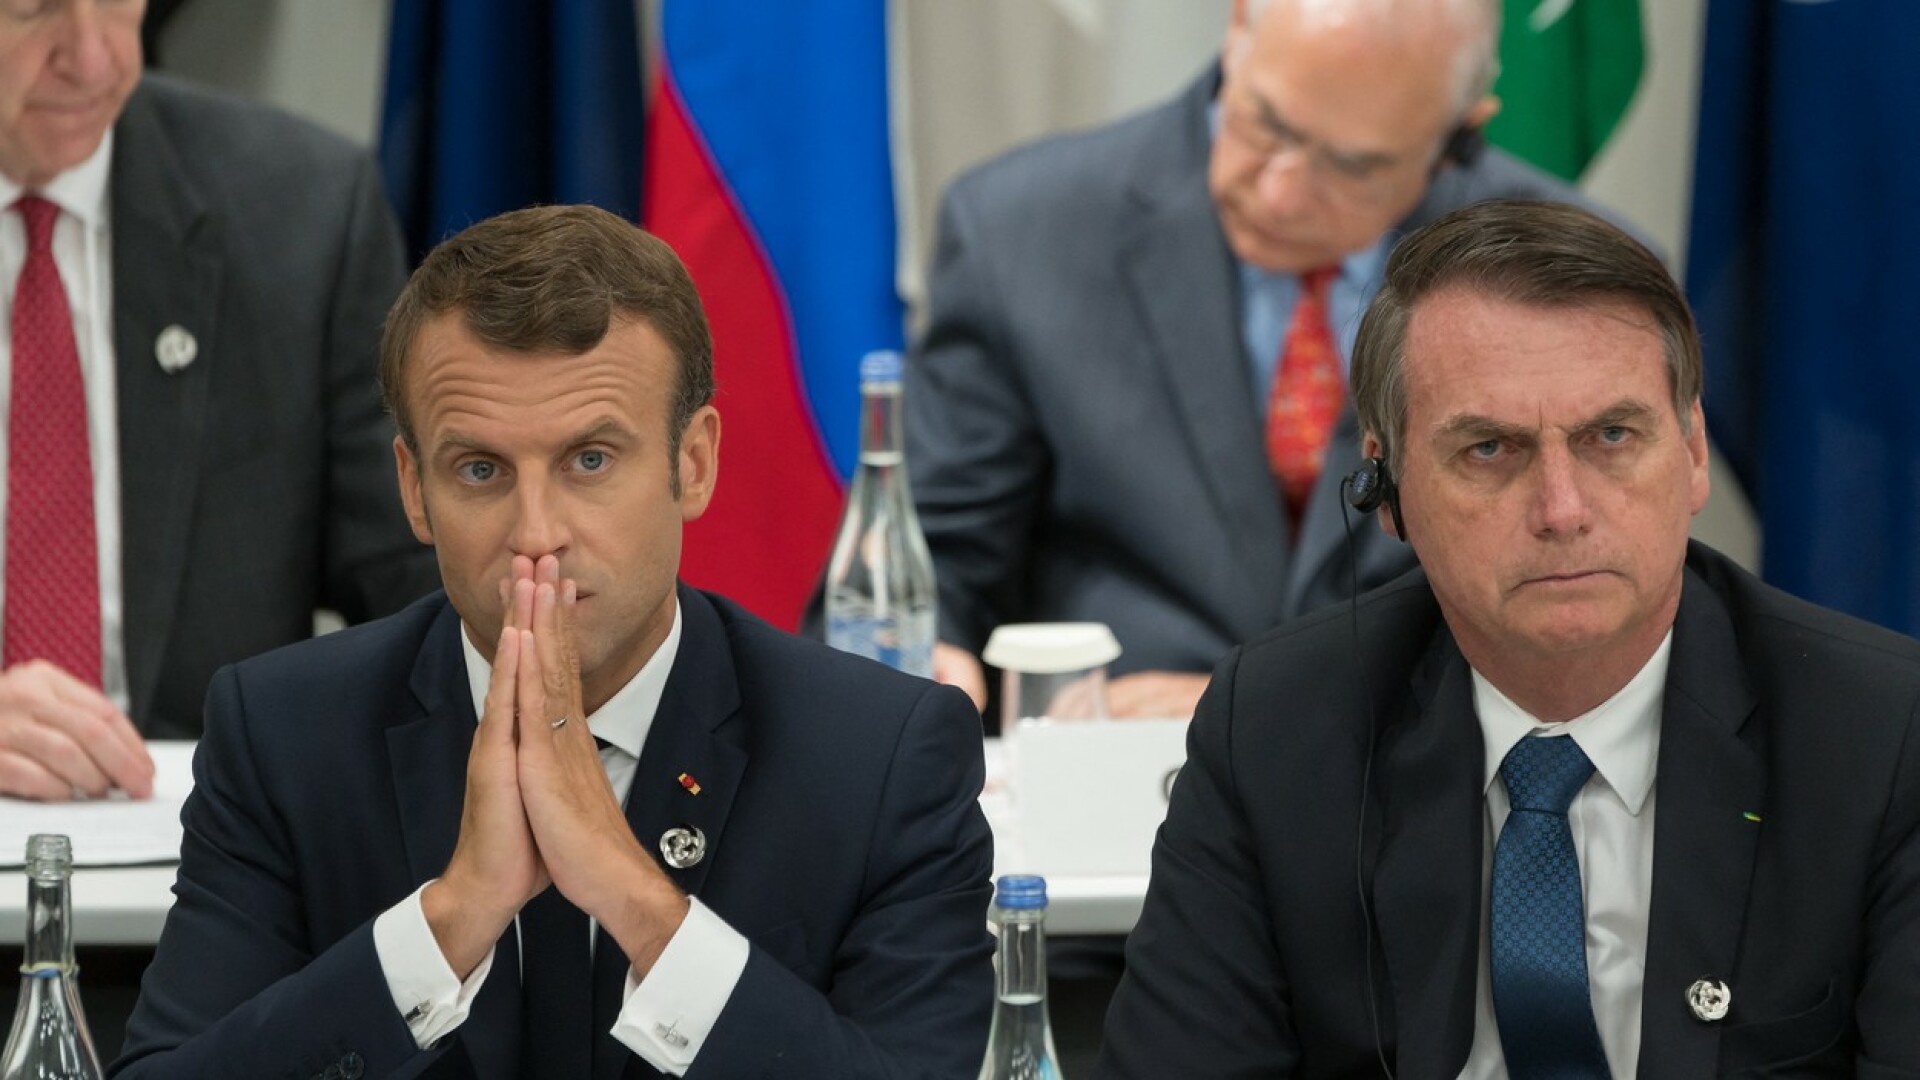 Reacția furioasă a lui Macron, după ce președintele Braziliei i-a insultat soția